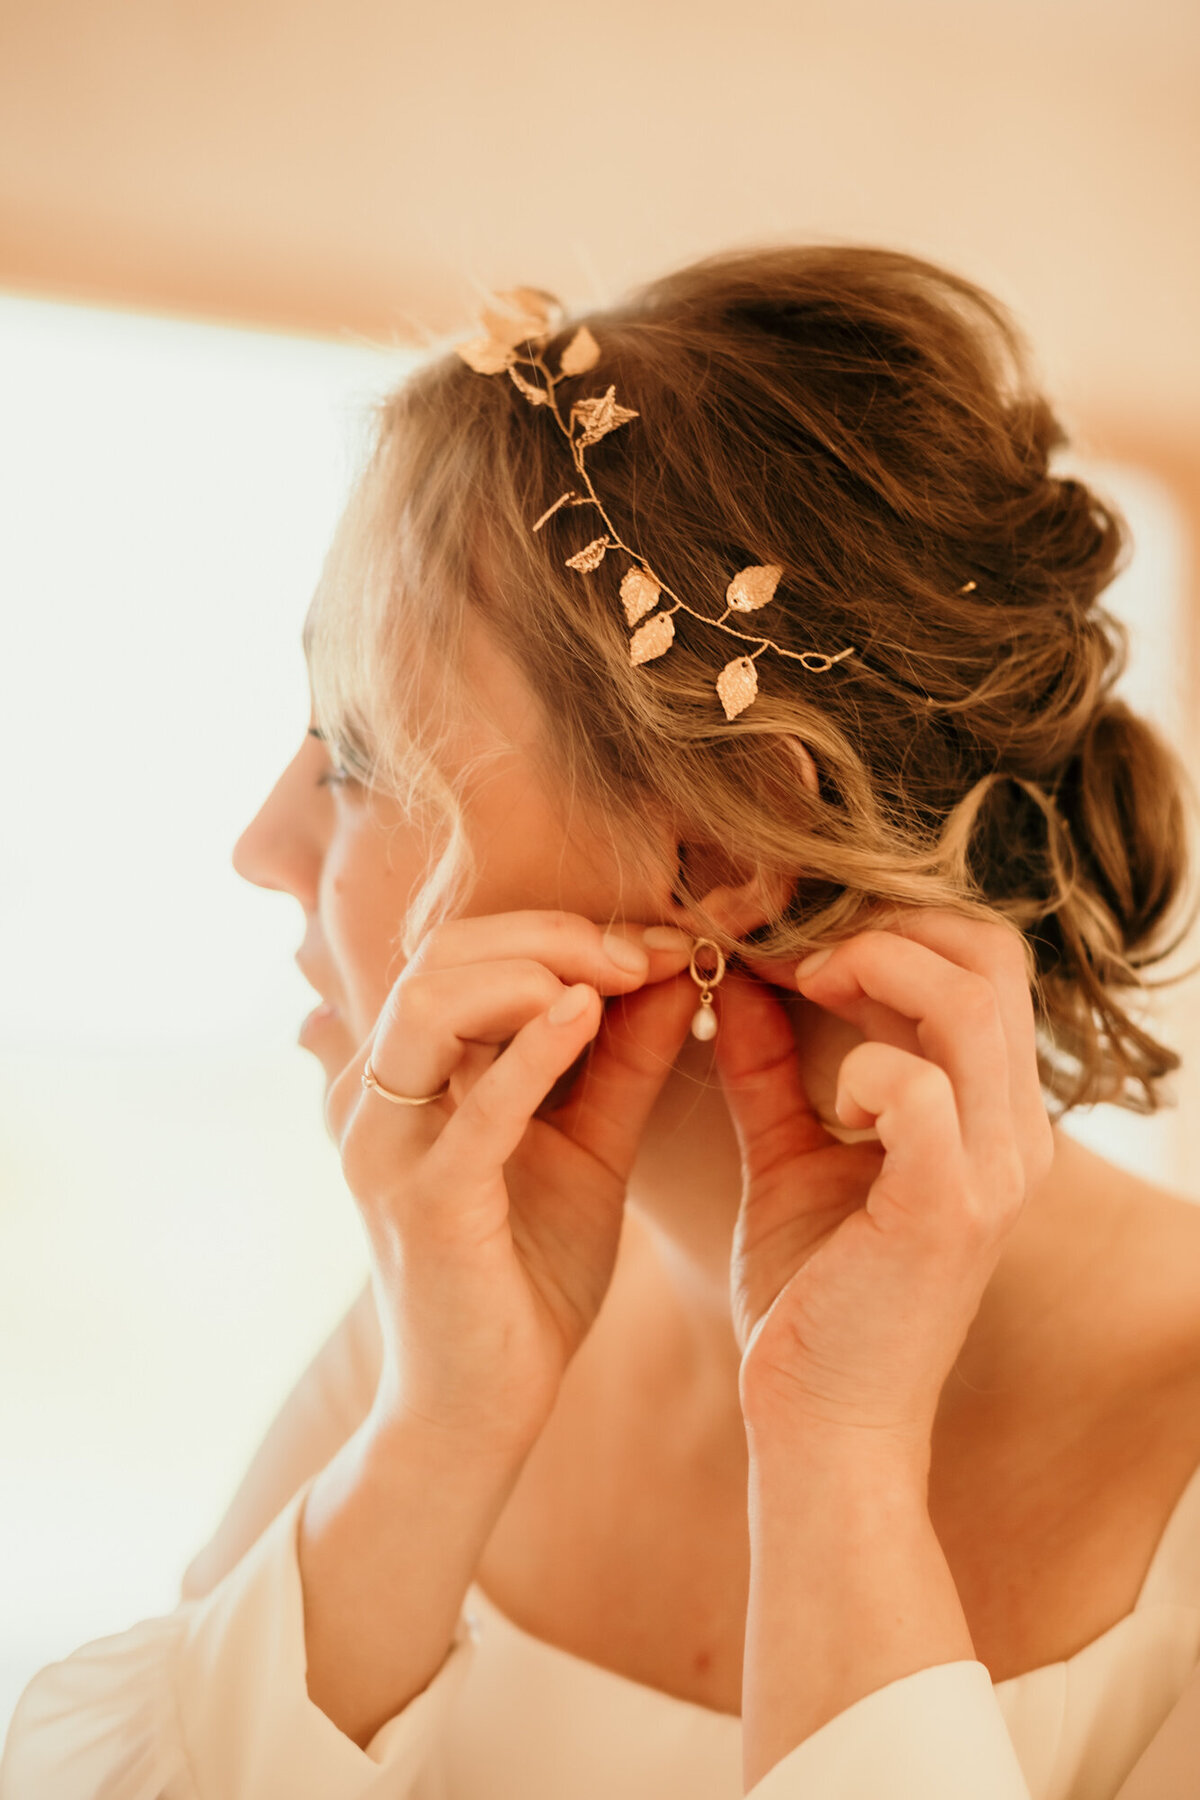 Mit beiden Händen steckt die Braut sich einen Ohrring an.